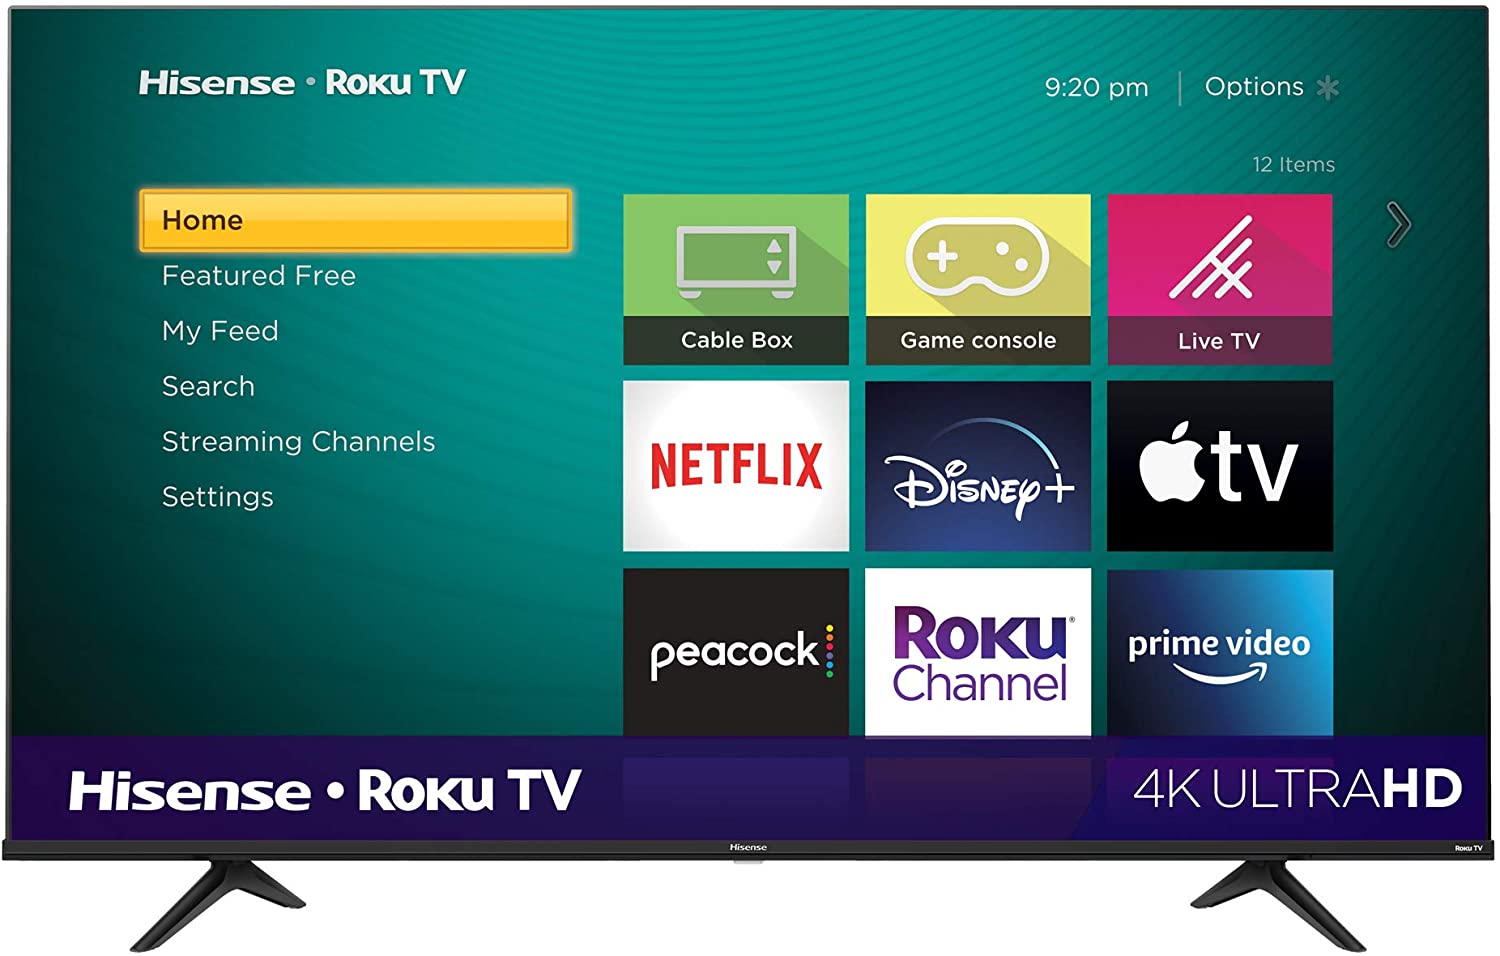 65" Hisense 65R6G 4K UHD HDR Roku Smart TV with Alexa $460 + free s/h at Amazon